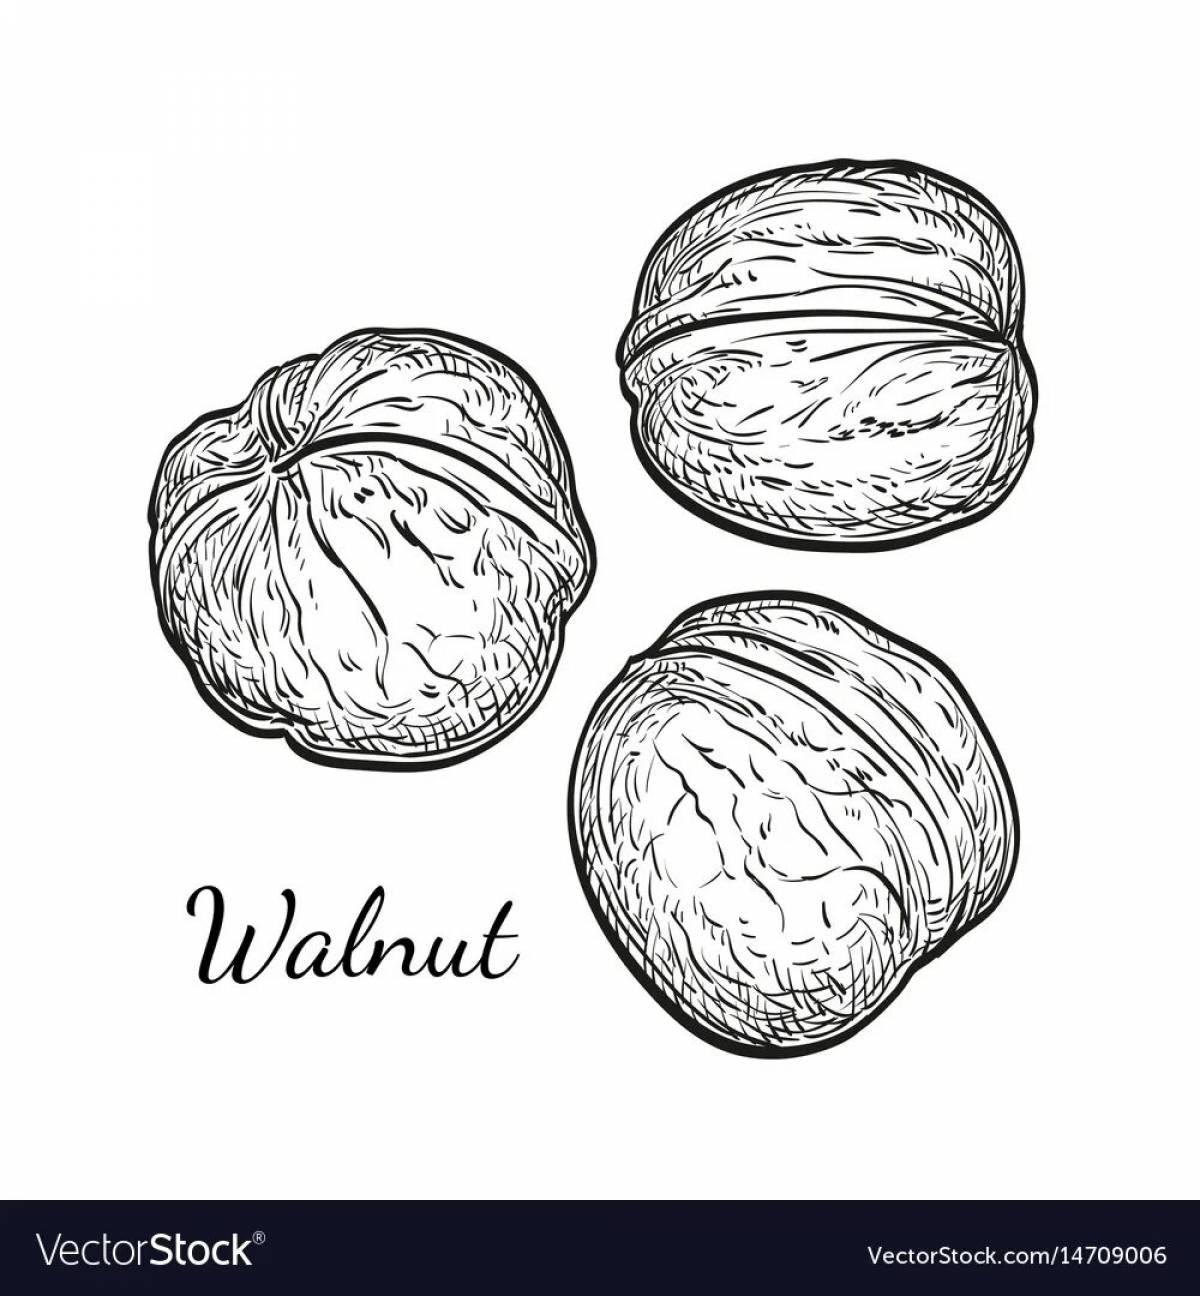 Walnut #2